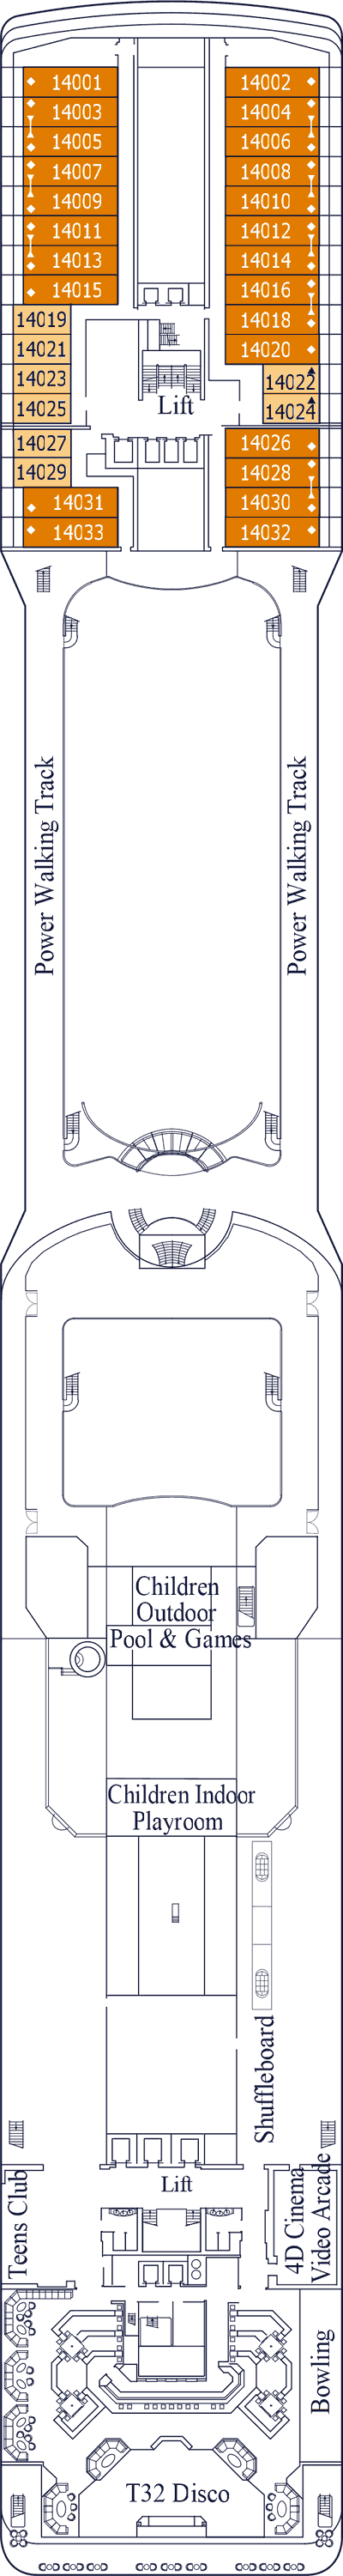 MSC Magnifica - Decksplan Deck 14